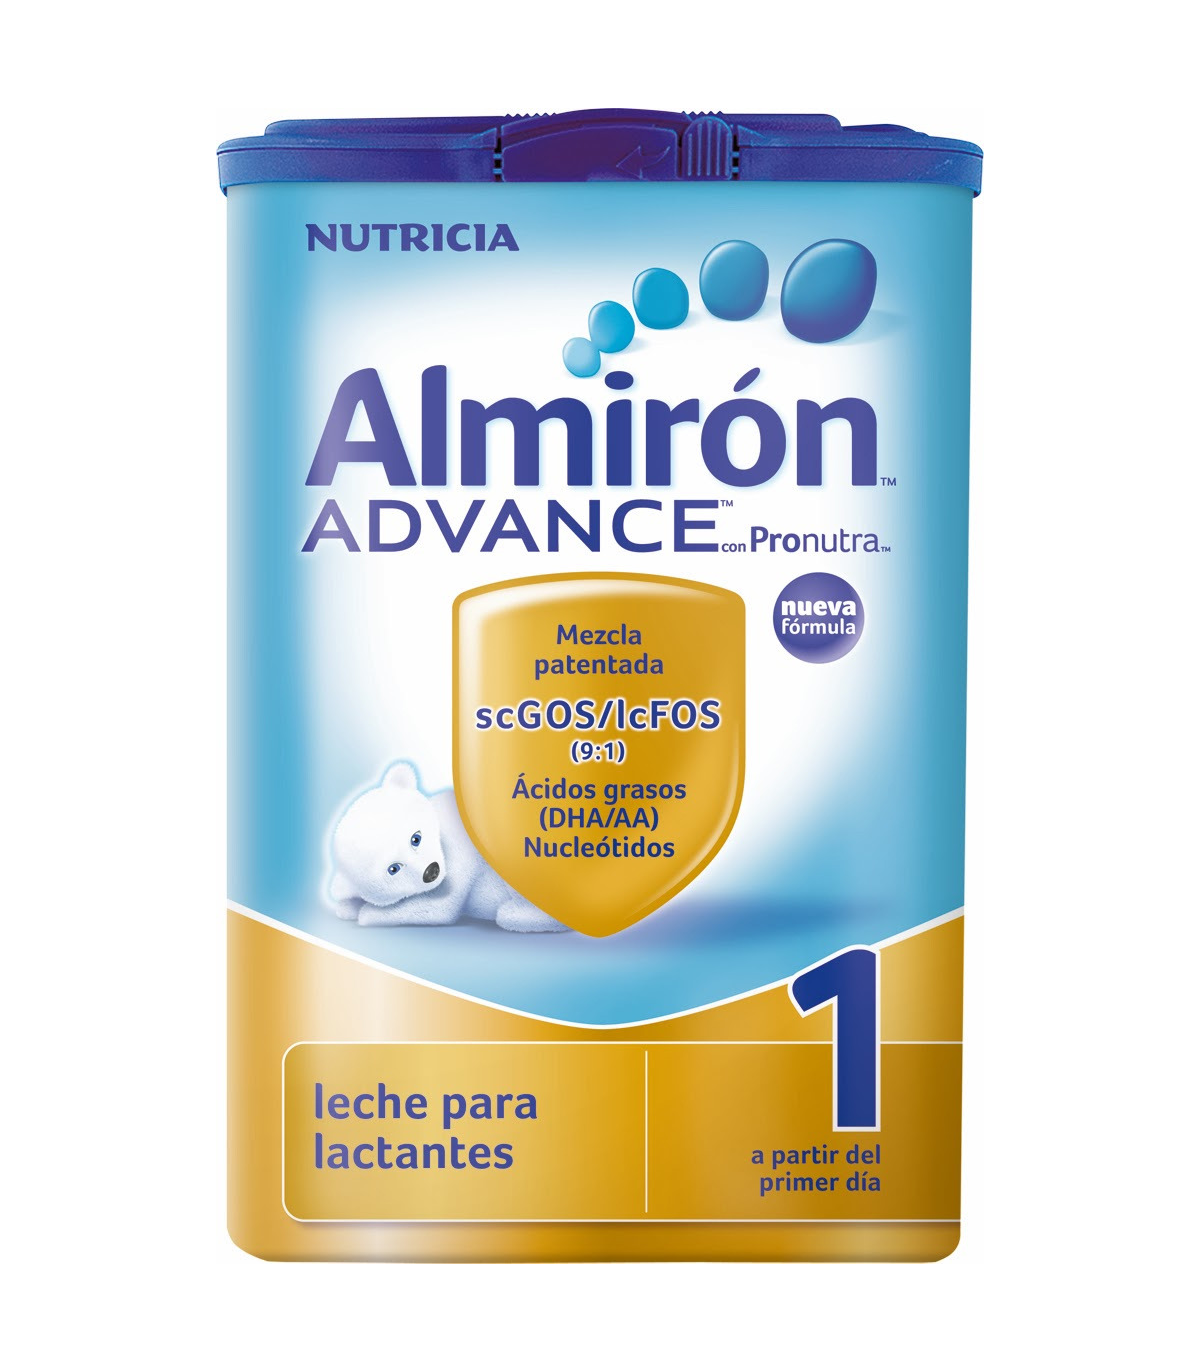 Comprar Almiron Advance 1, 800g al mejor precio